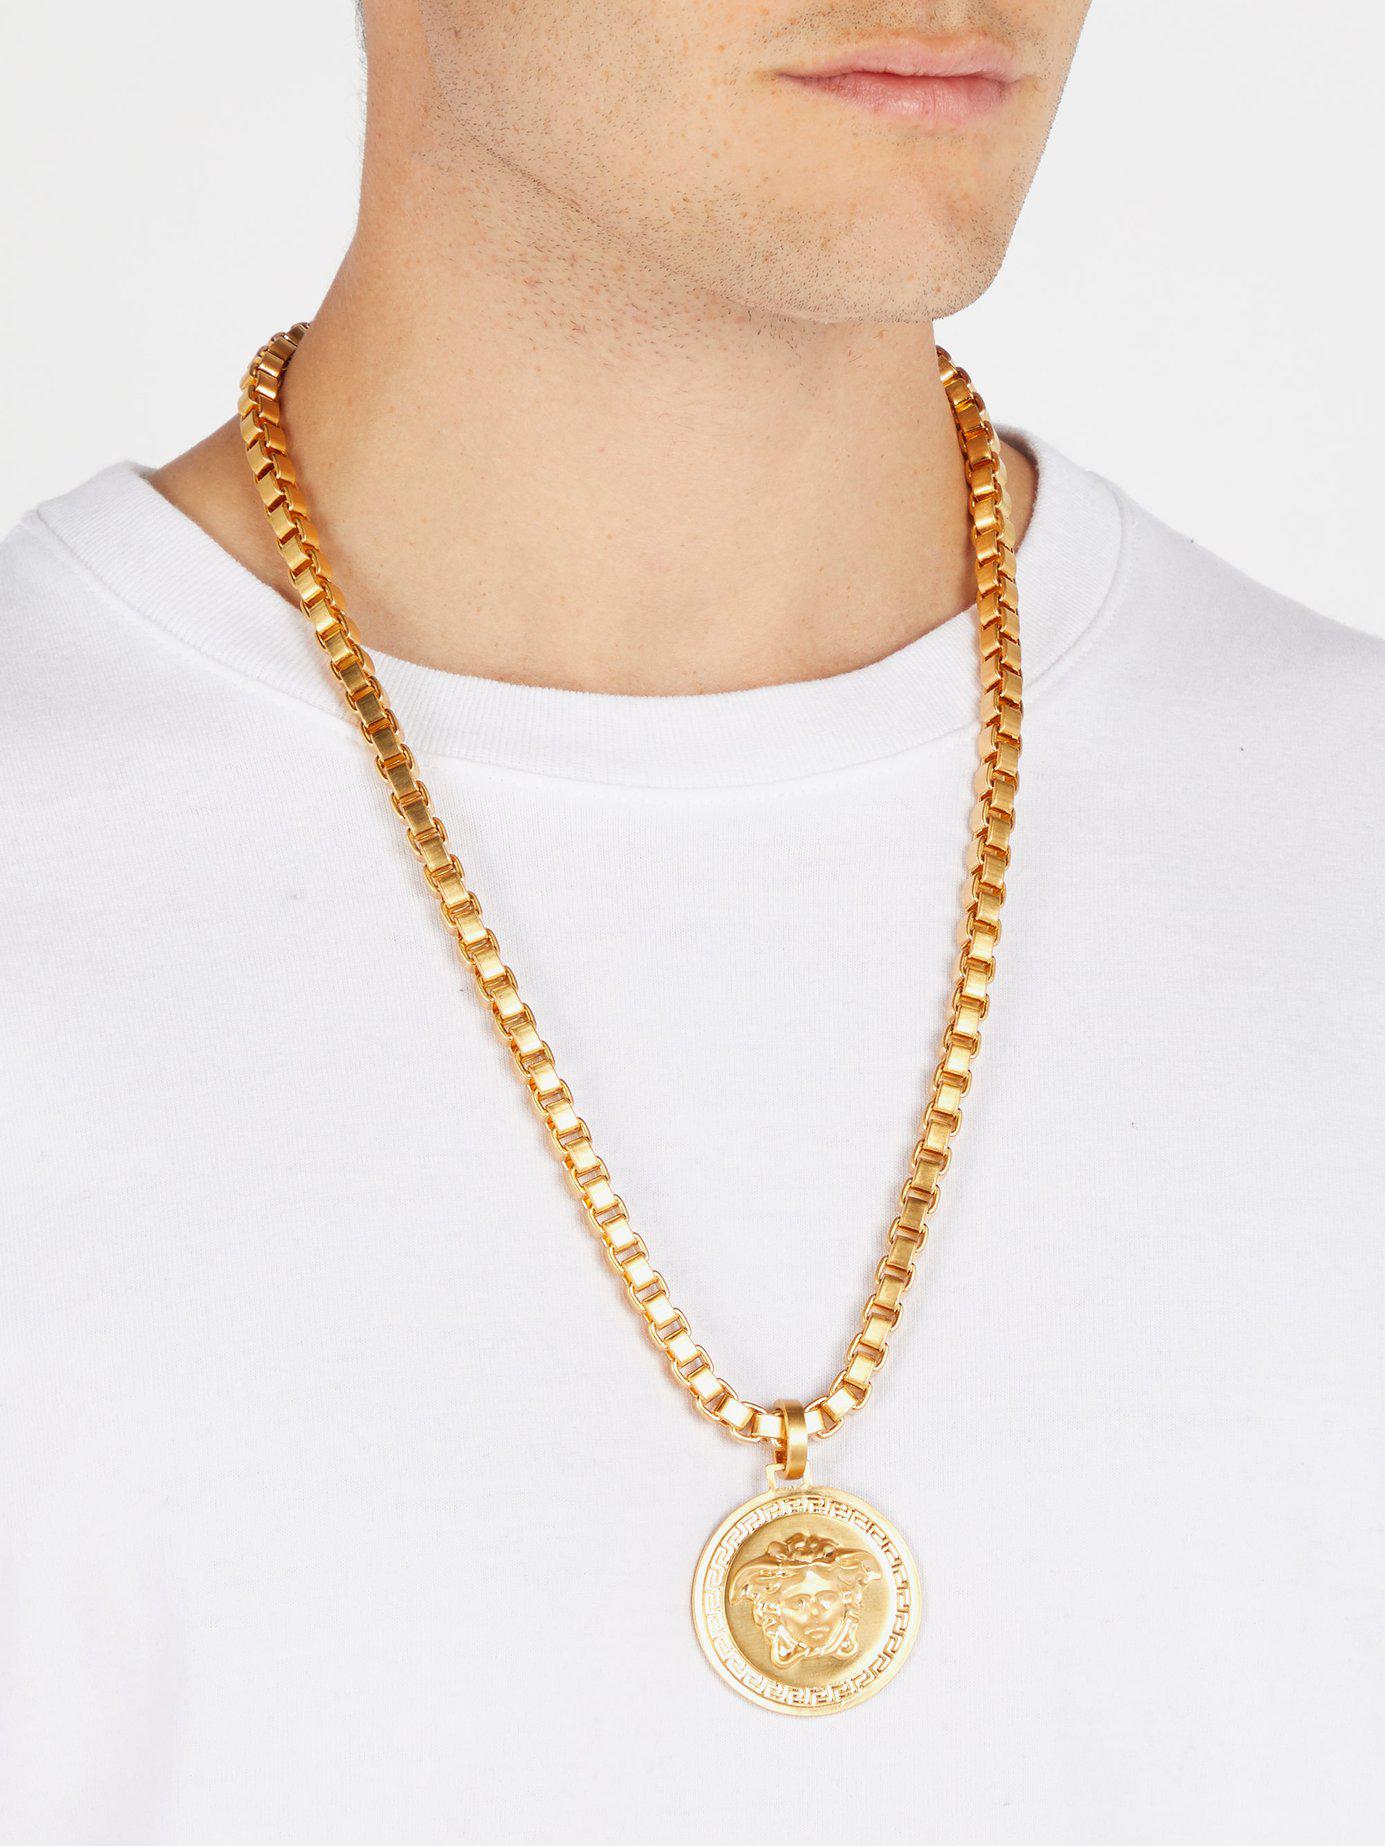 Versace Medusa Pendant Necklace in Metallic for Men - Lyst